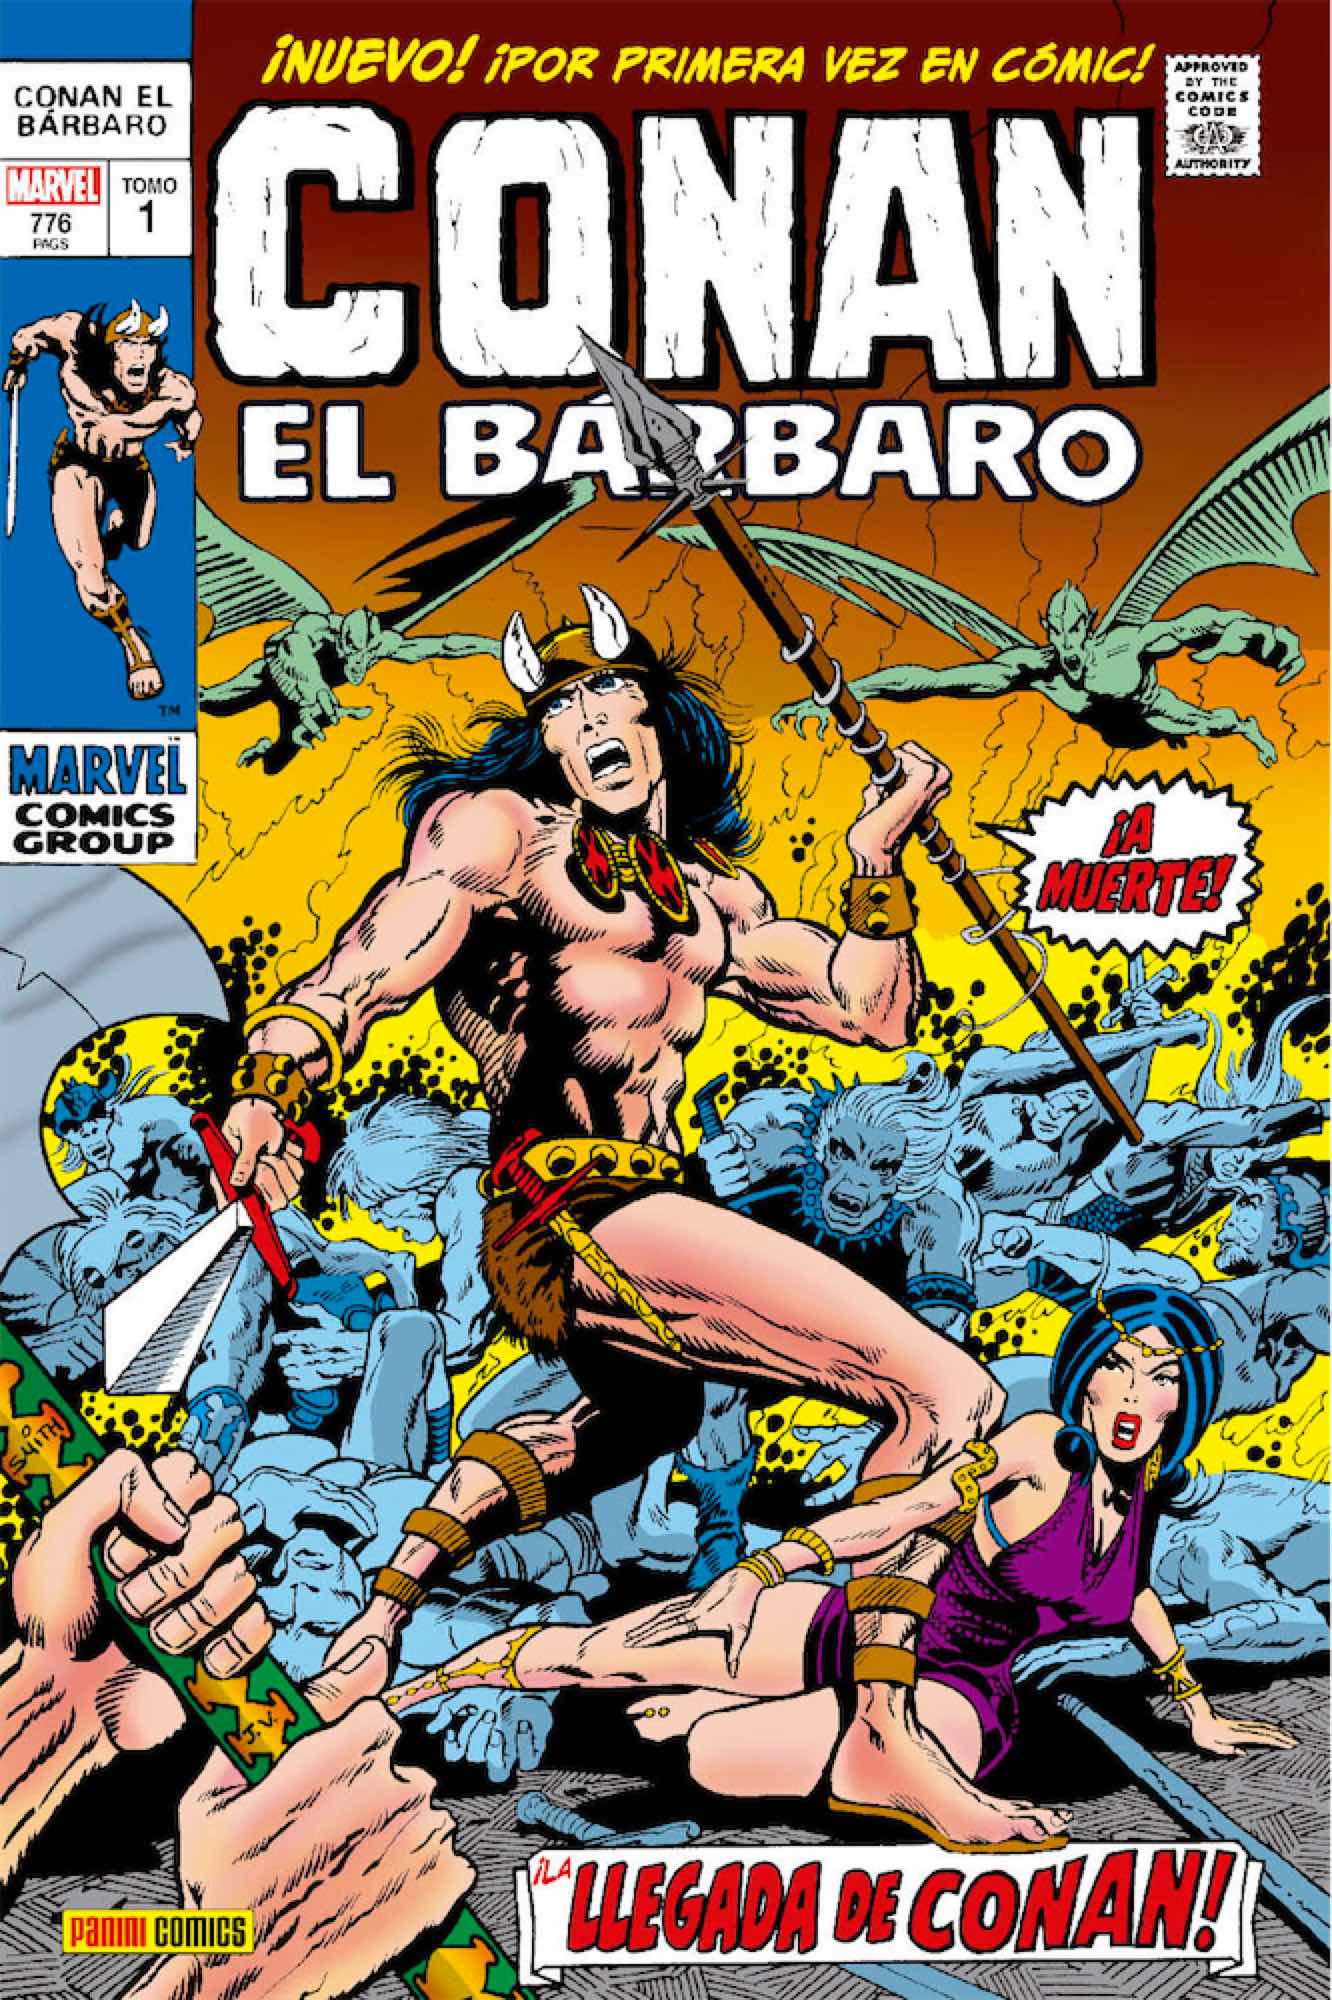 CONAN EL BARBARO: LA ETAPA MARVEL ORIGINAL 01. ¡LLEGA CONAN EL BARBARO!